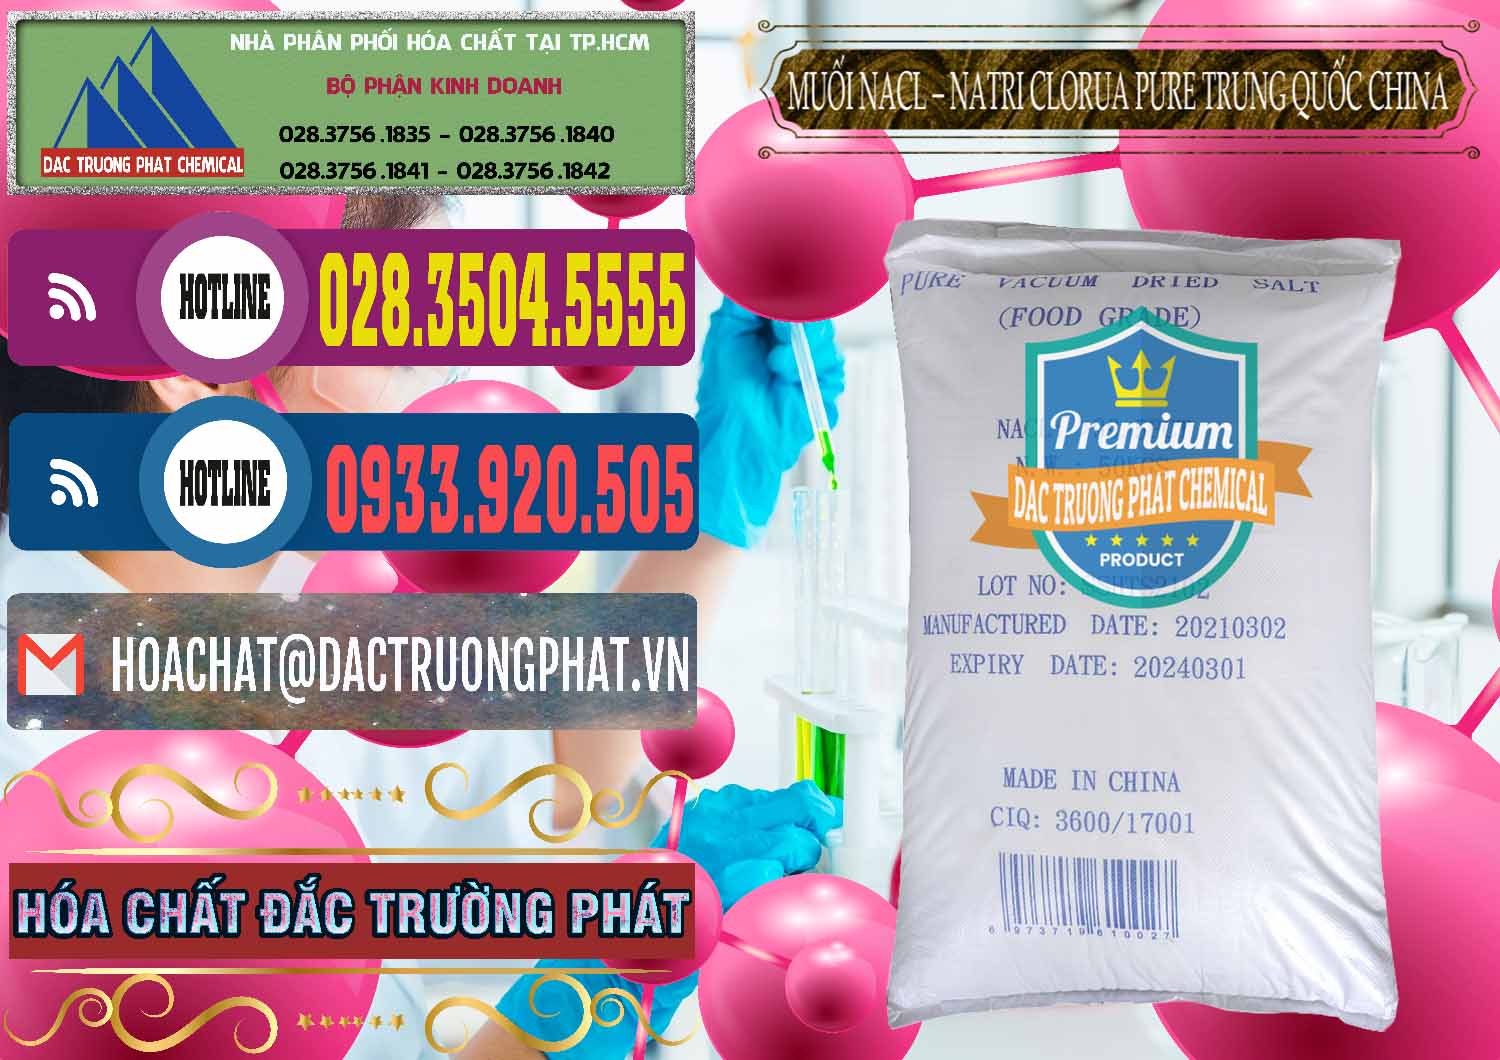 Nhà phân phối _ bán Muối NaCL – Sodium Chloride Pure Trung Quốc China - 0230 - Cty chuyên kinh doanh - cung cấp hóa chất tại TP.HCM - muabanhoachat.com.vn